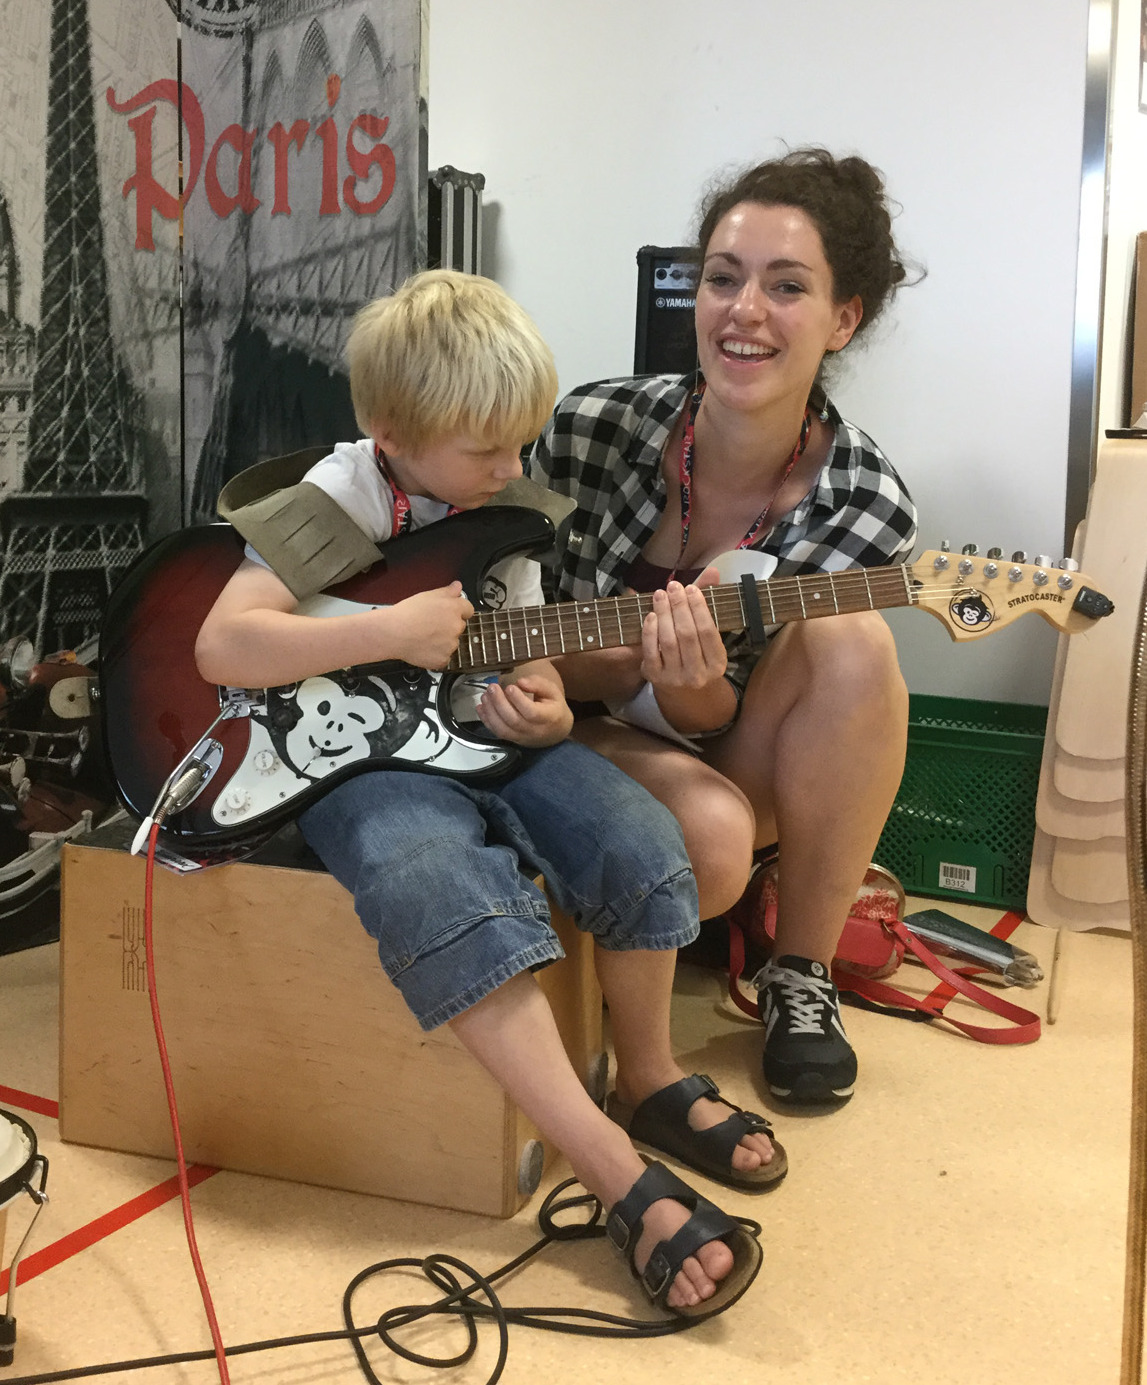 Musikworkshop 2016 - Junge spielt Gitarre